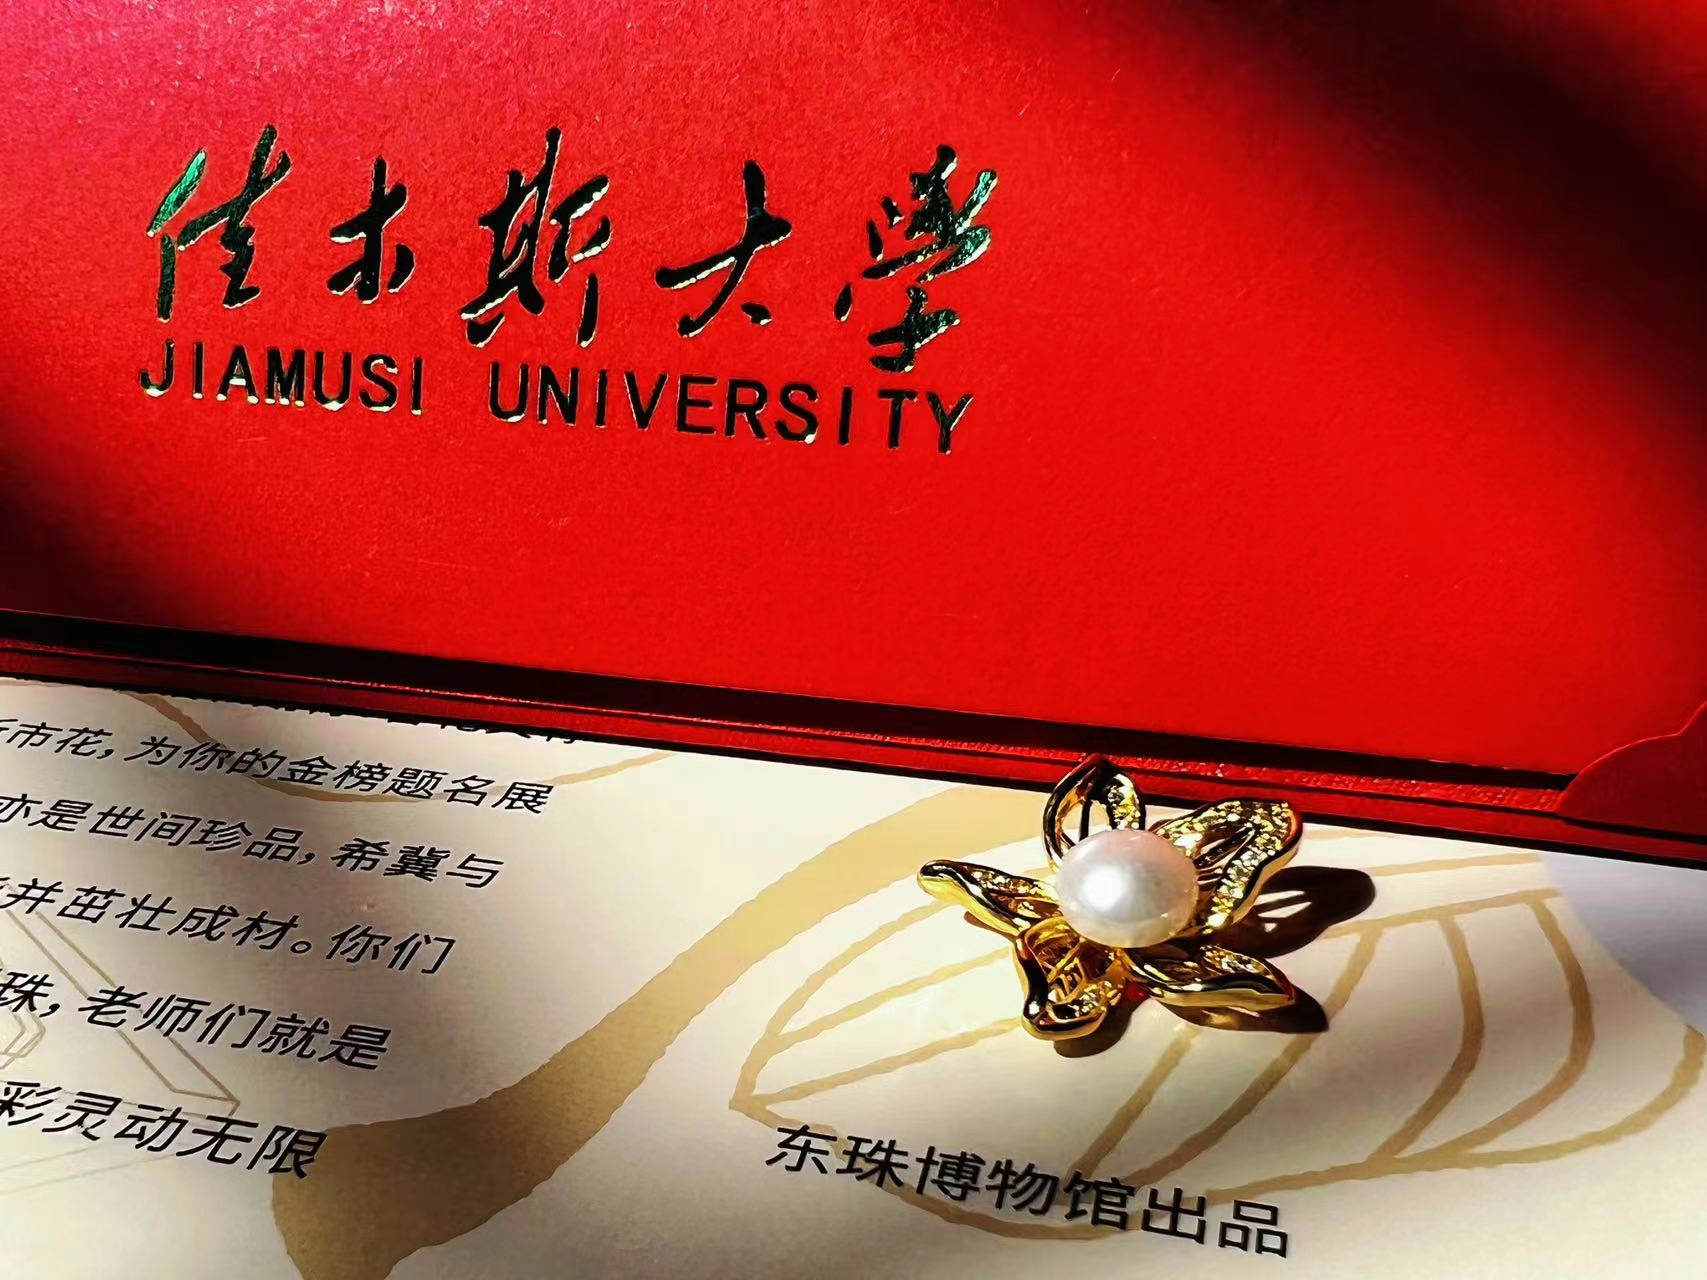 佳木斯大學錄取通知書驚喜升級 內藏東珠 學子成掌上明珠